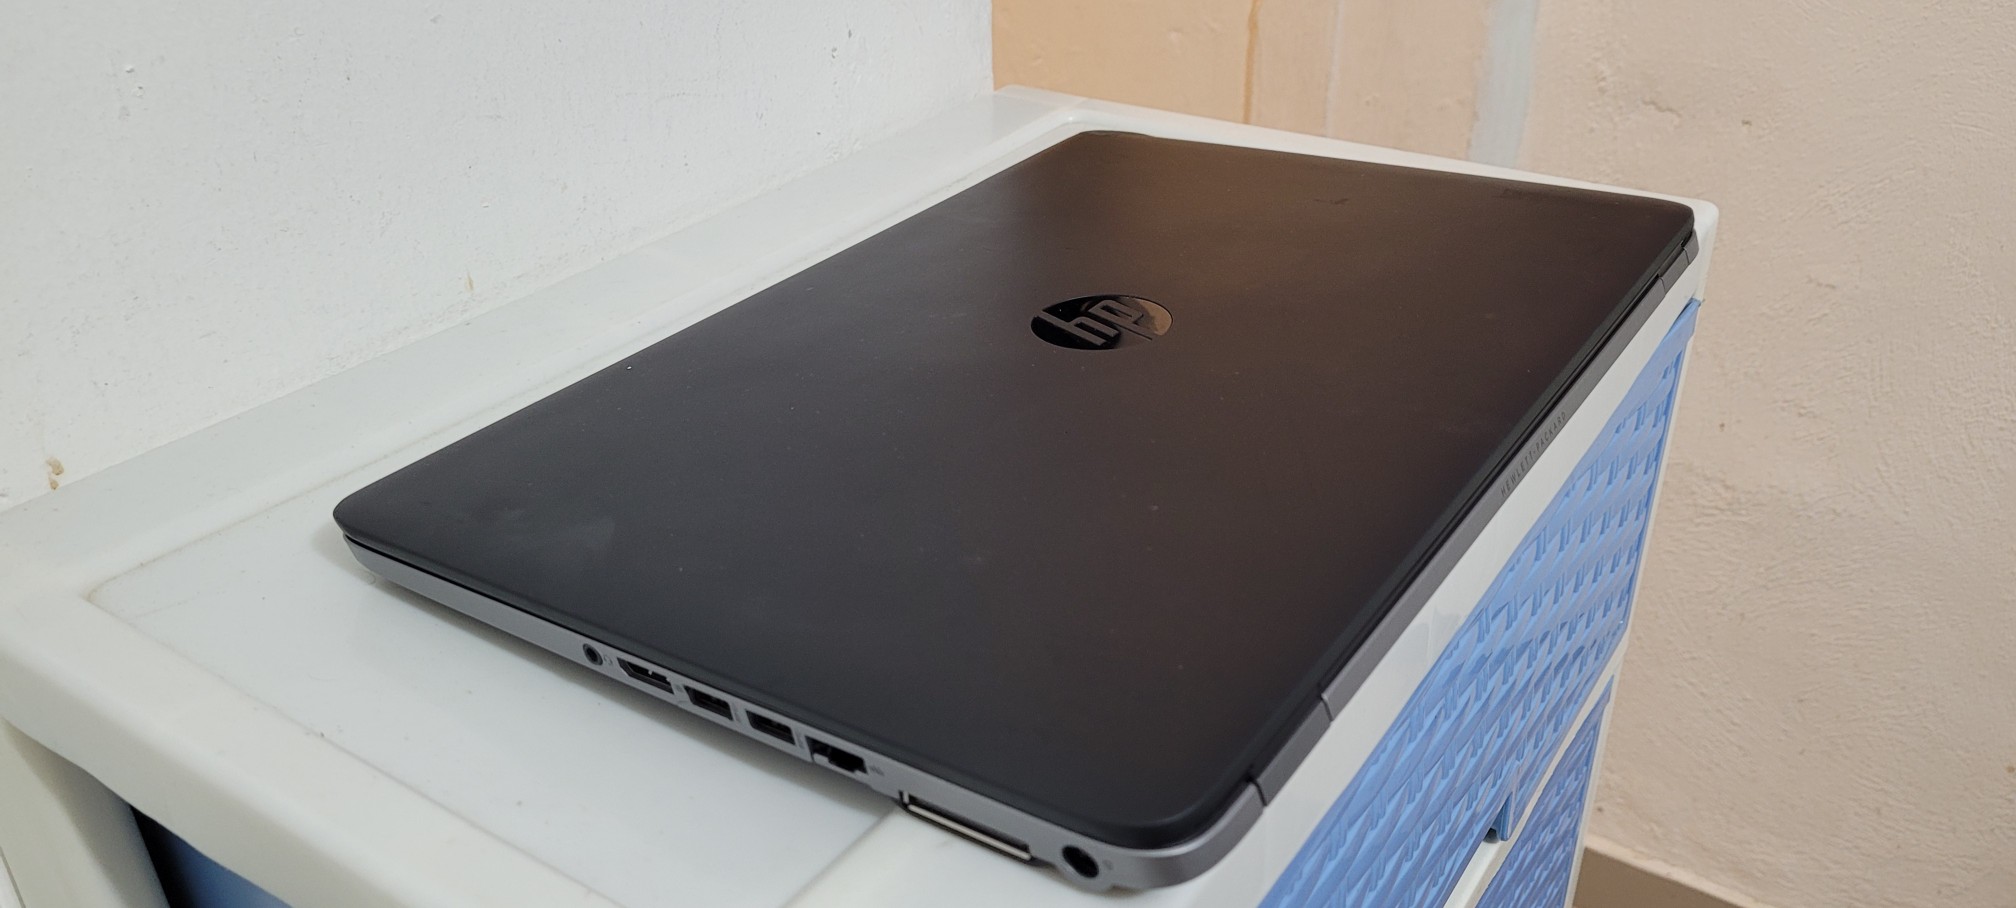 computadoras y laptops - Laptop hp 17 Pulg Core i5 Ram 16gb Disco 256gb SSD Teclado iluminado 2